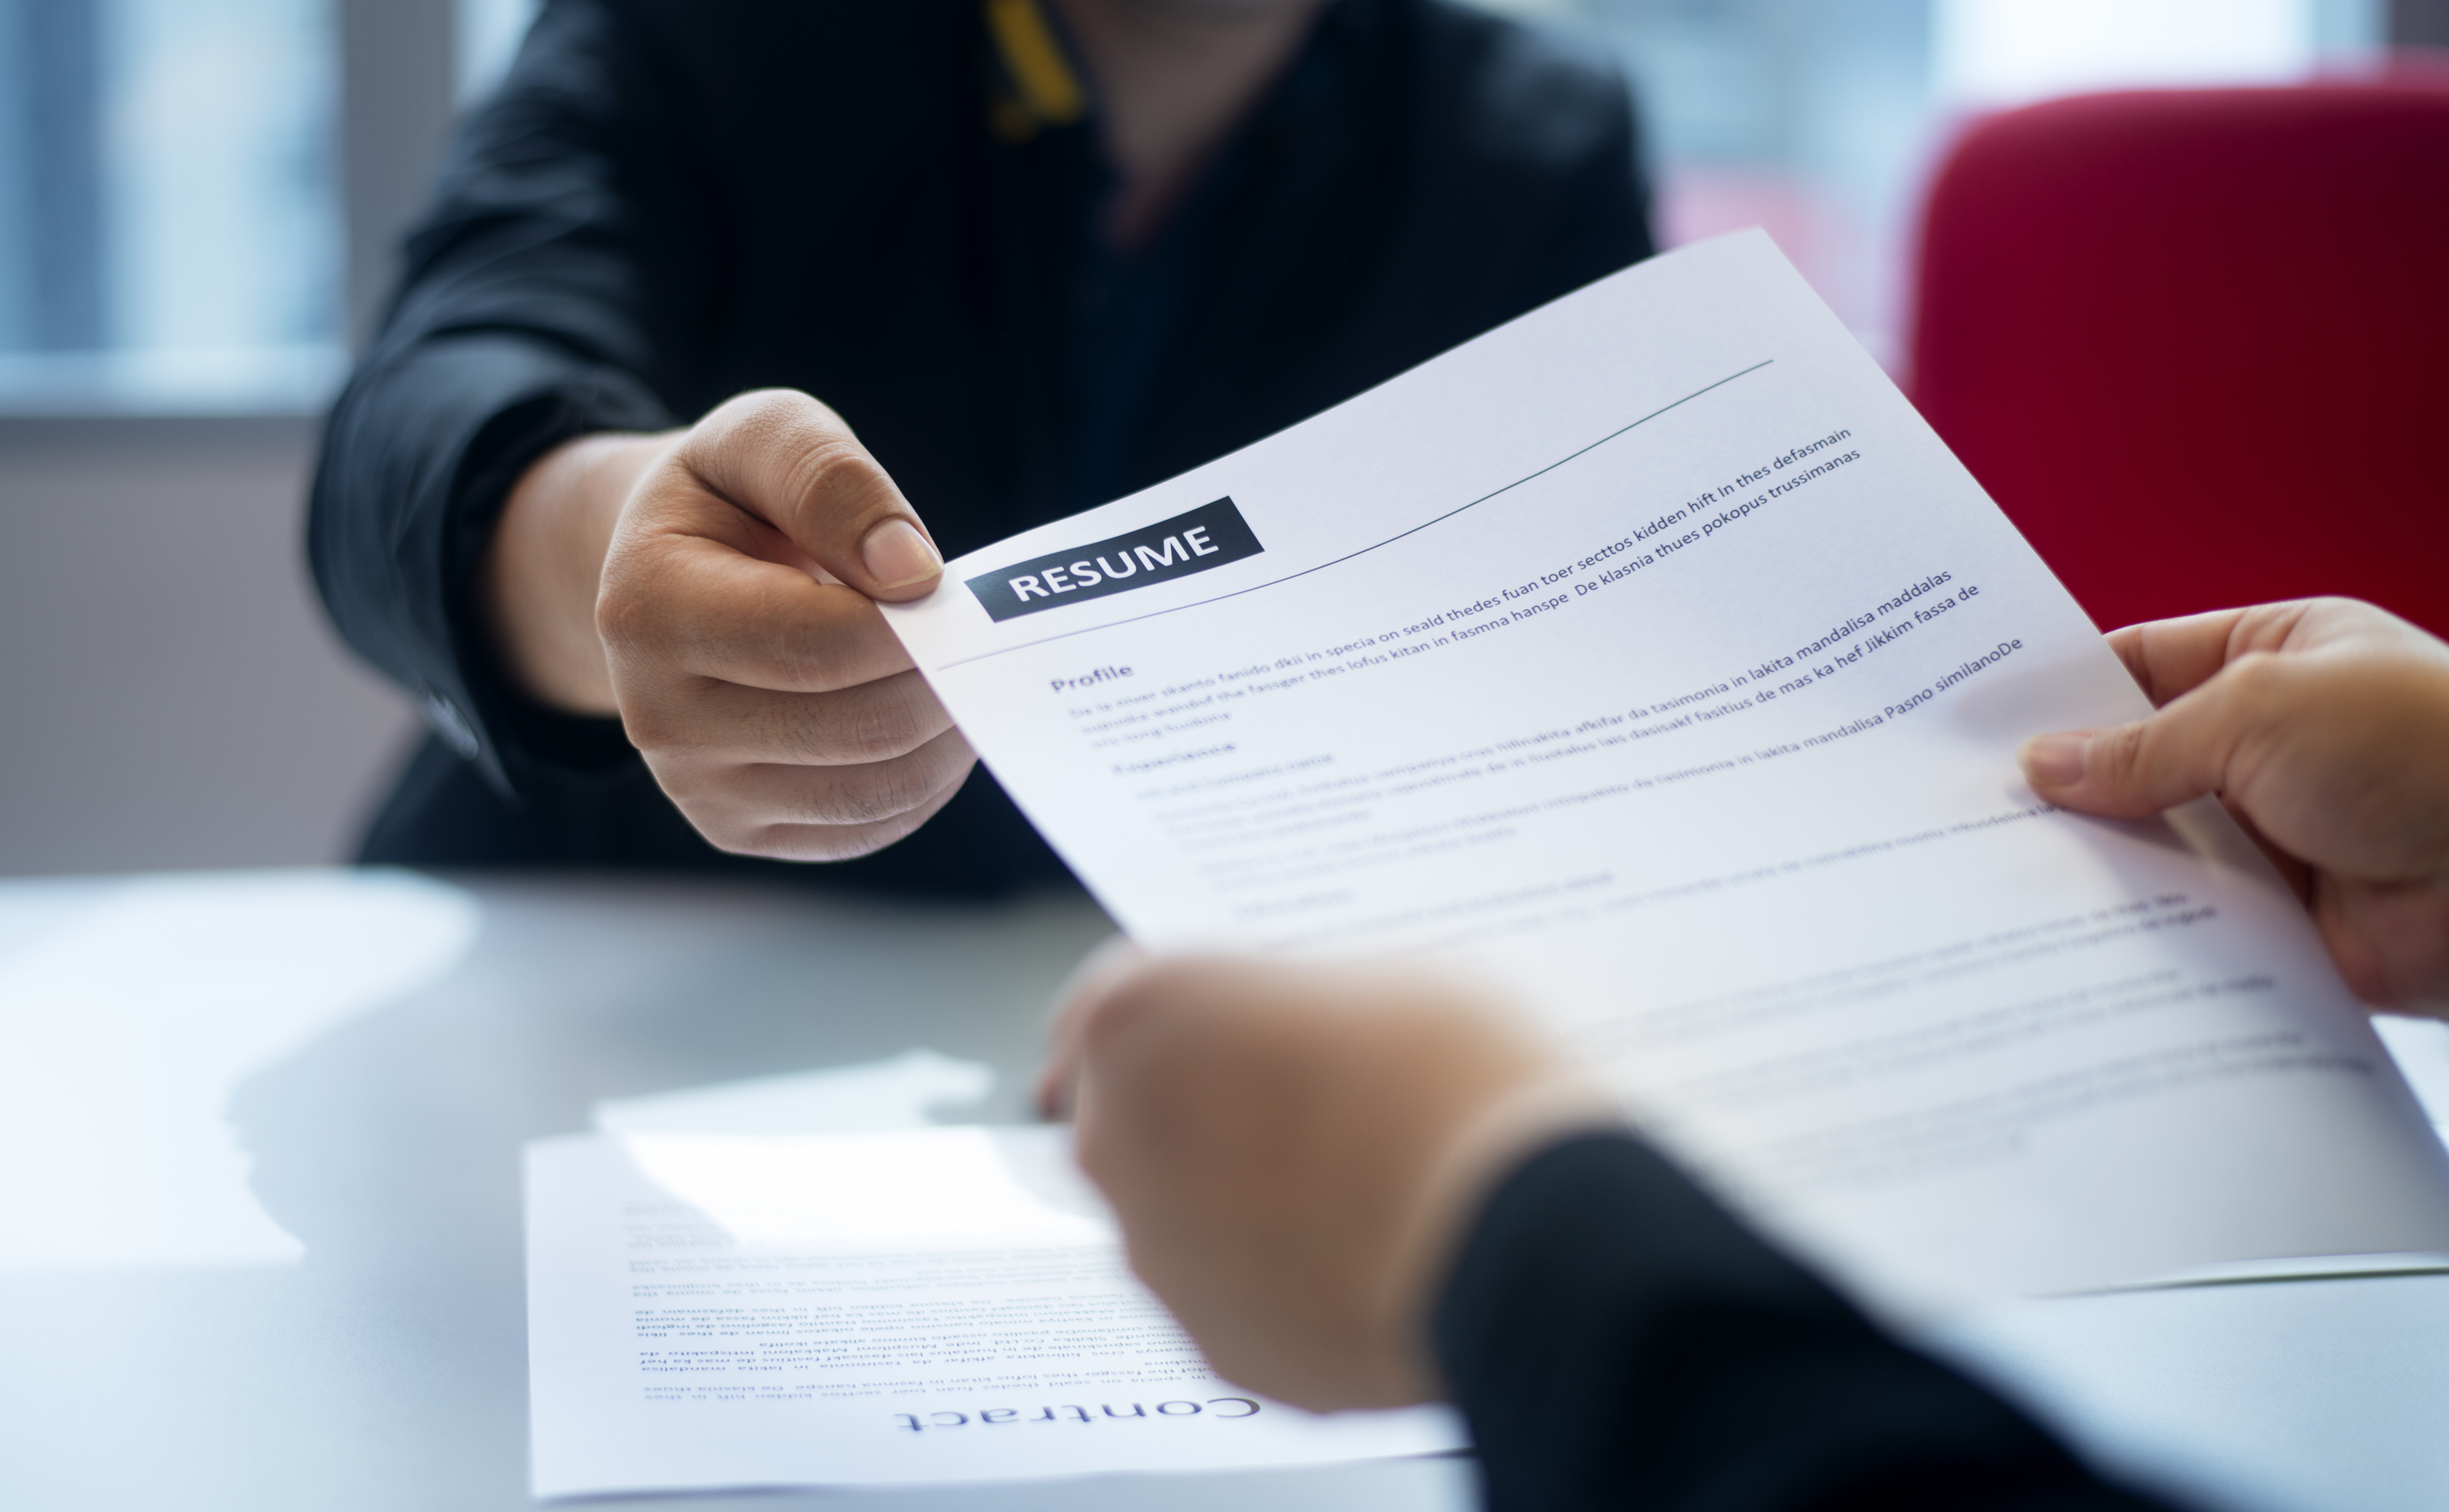 Hands exchanging a résumé across a desk during a job interview